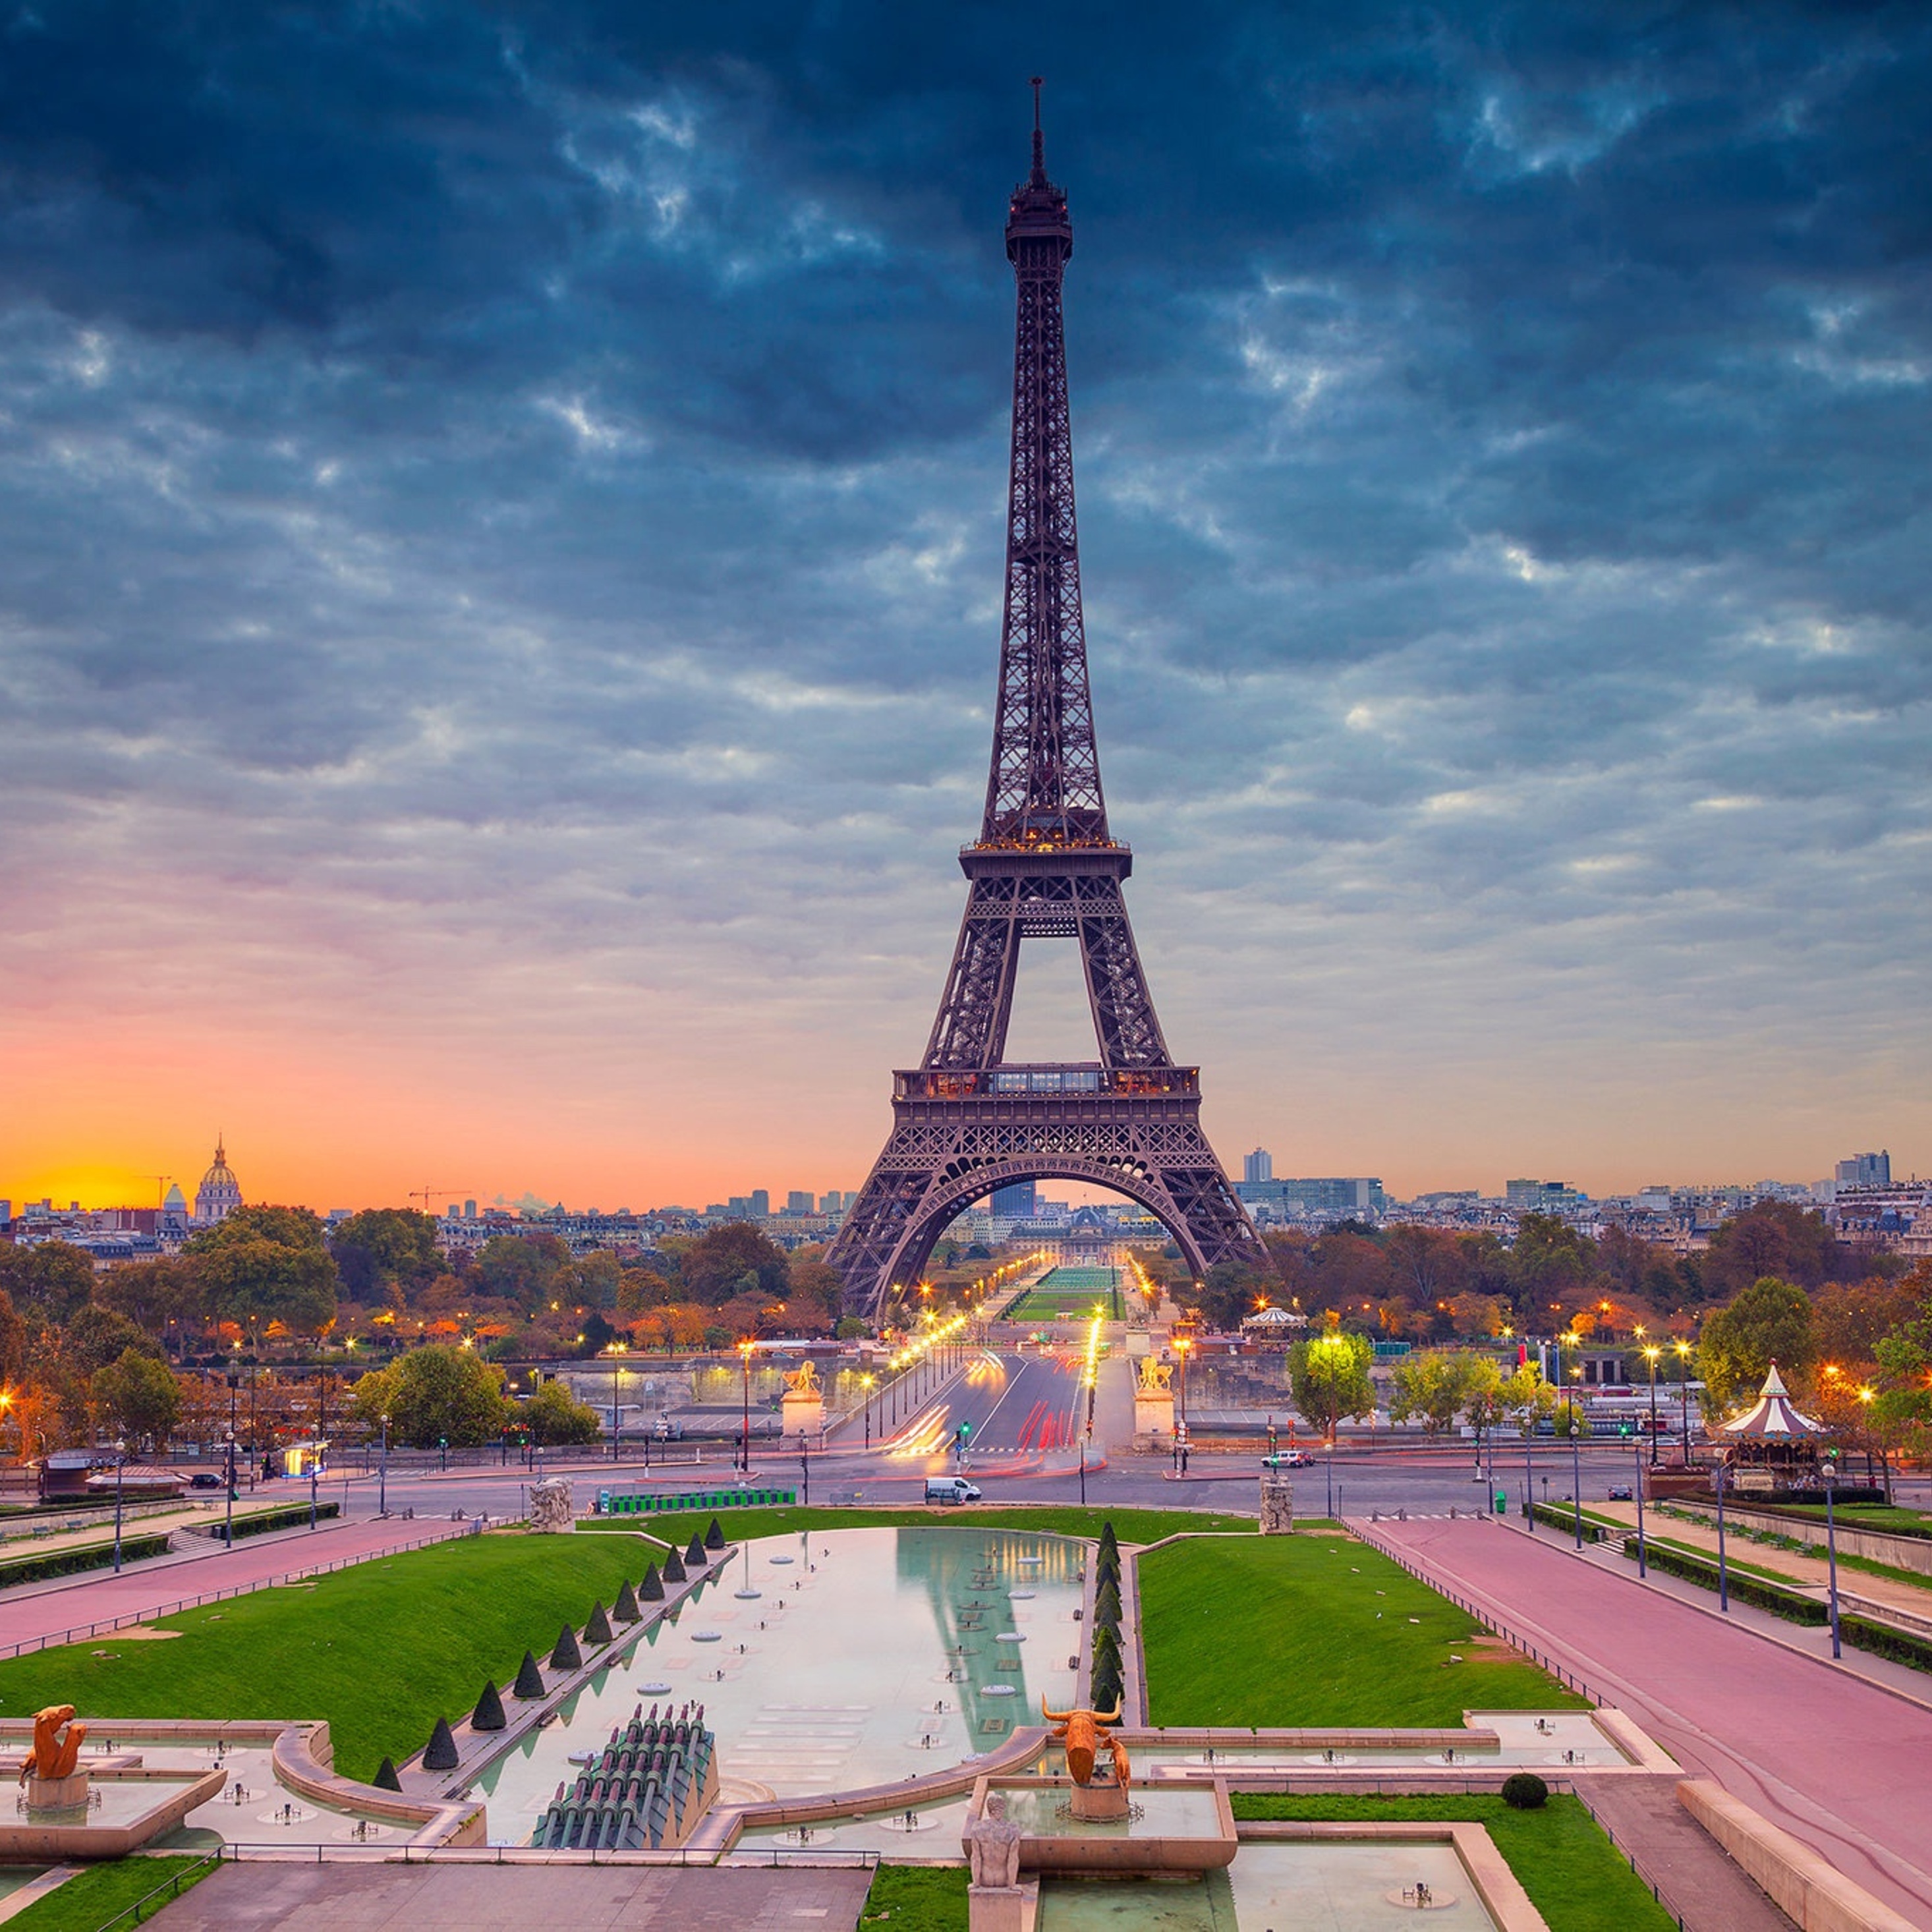 Lista 90+ Foto Imagenes De La Torre Eiffel Bonitas Mirada Tensa